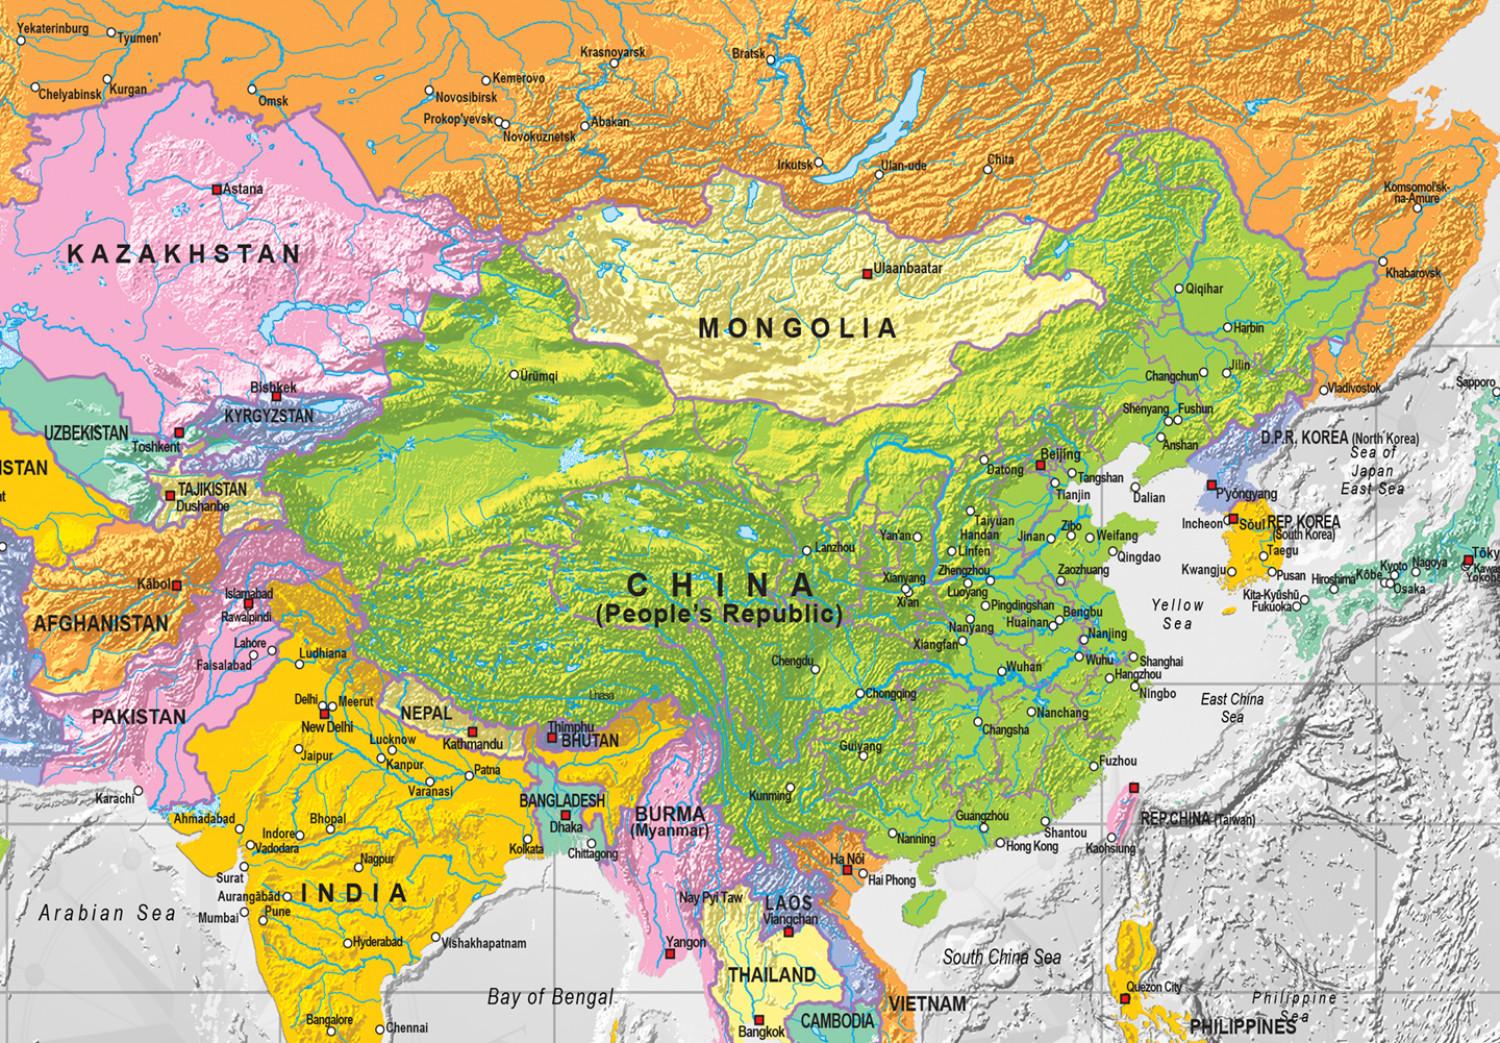 Cuadro Mapa del mundo: Rosa de los vientos II - mapa político con océano gris